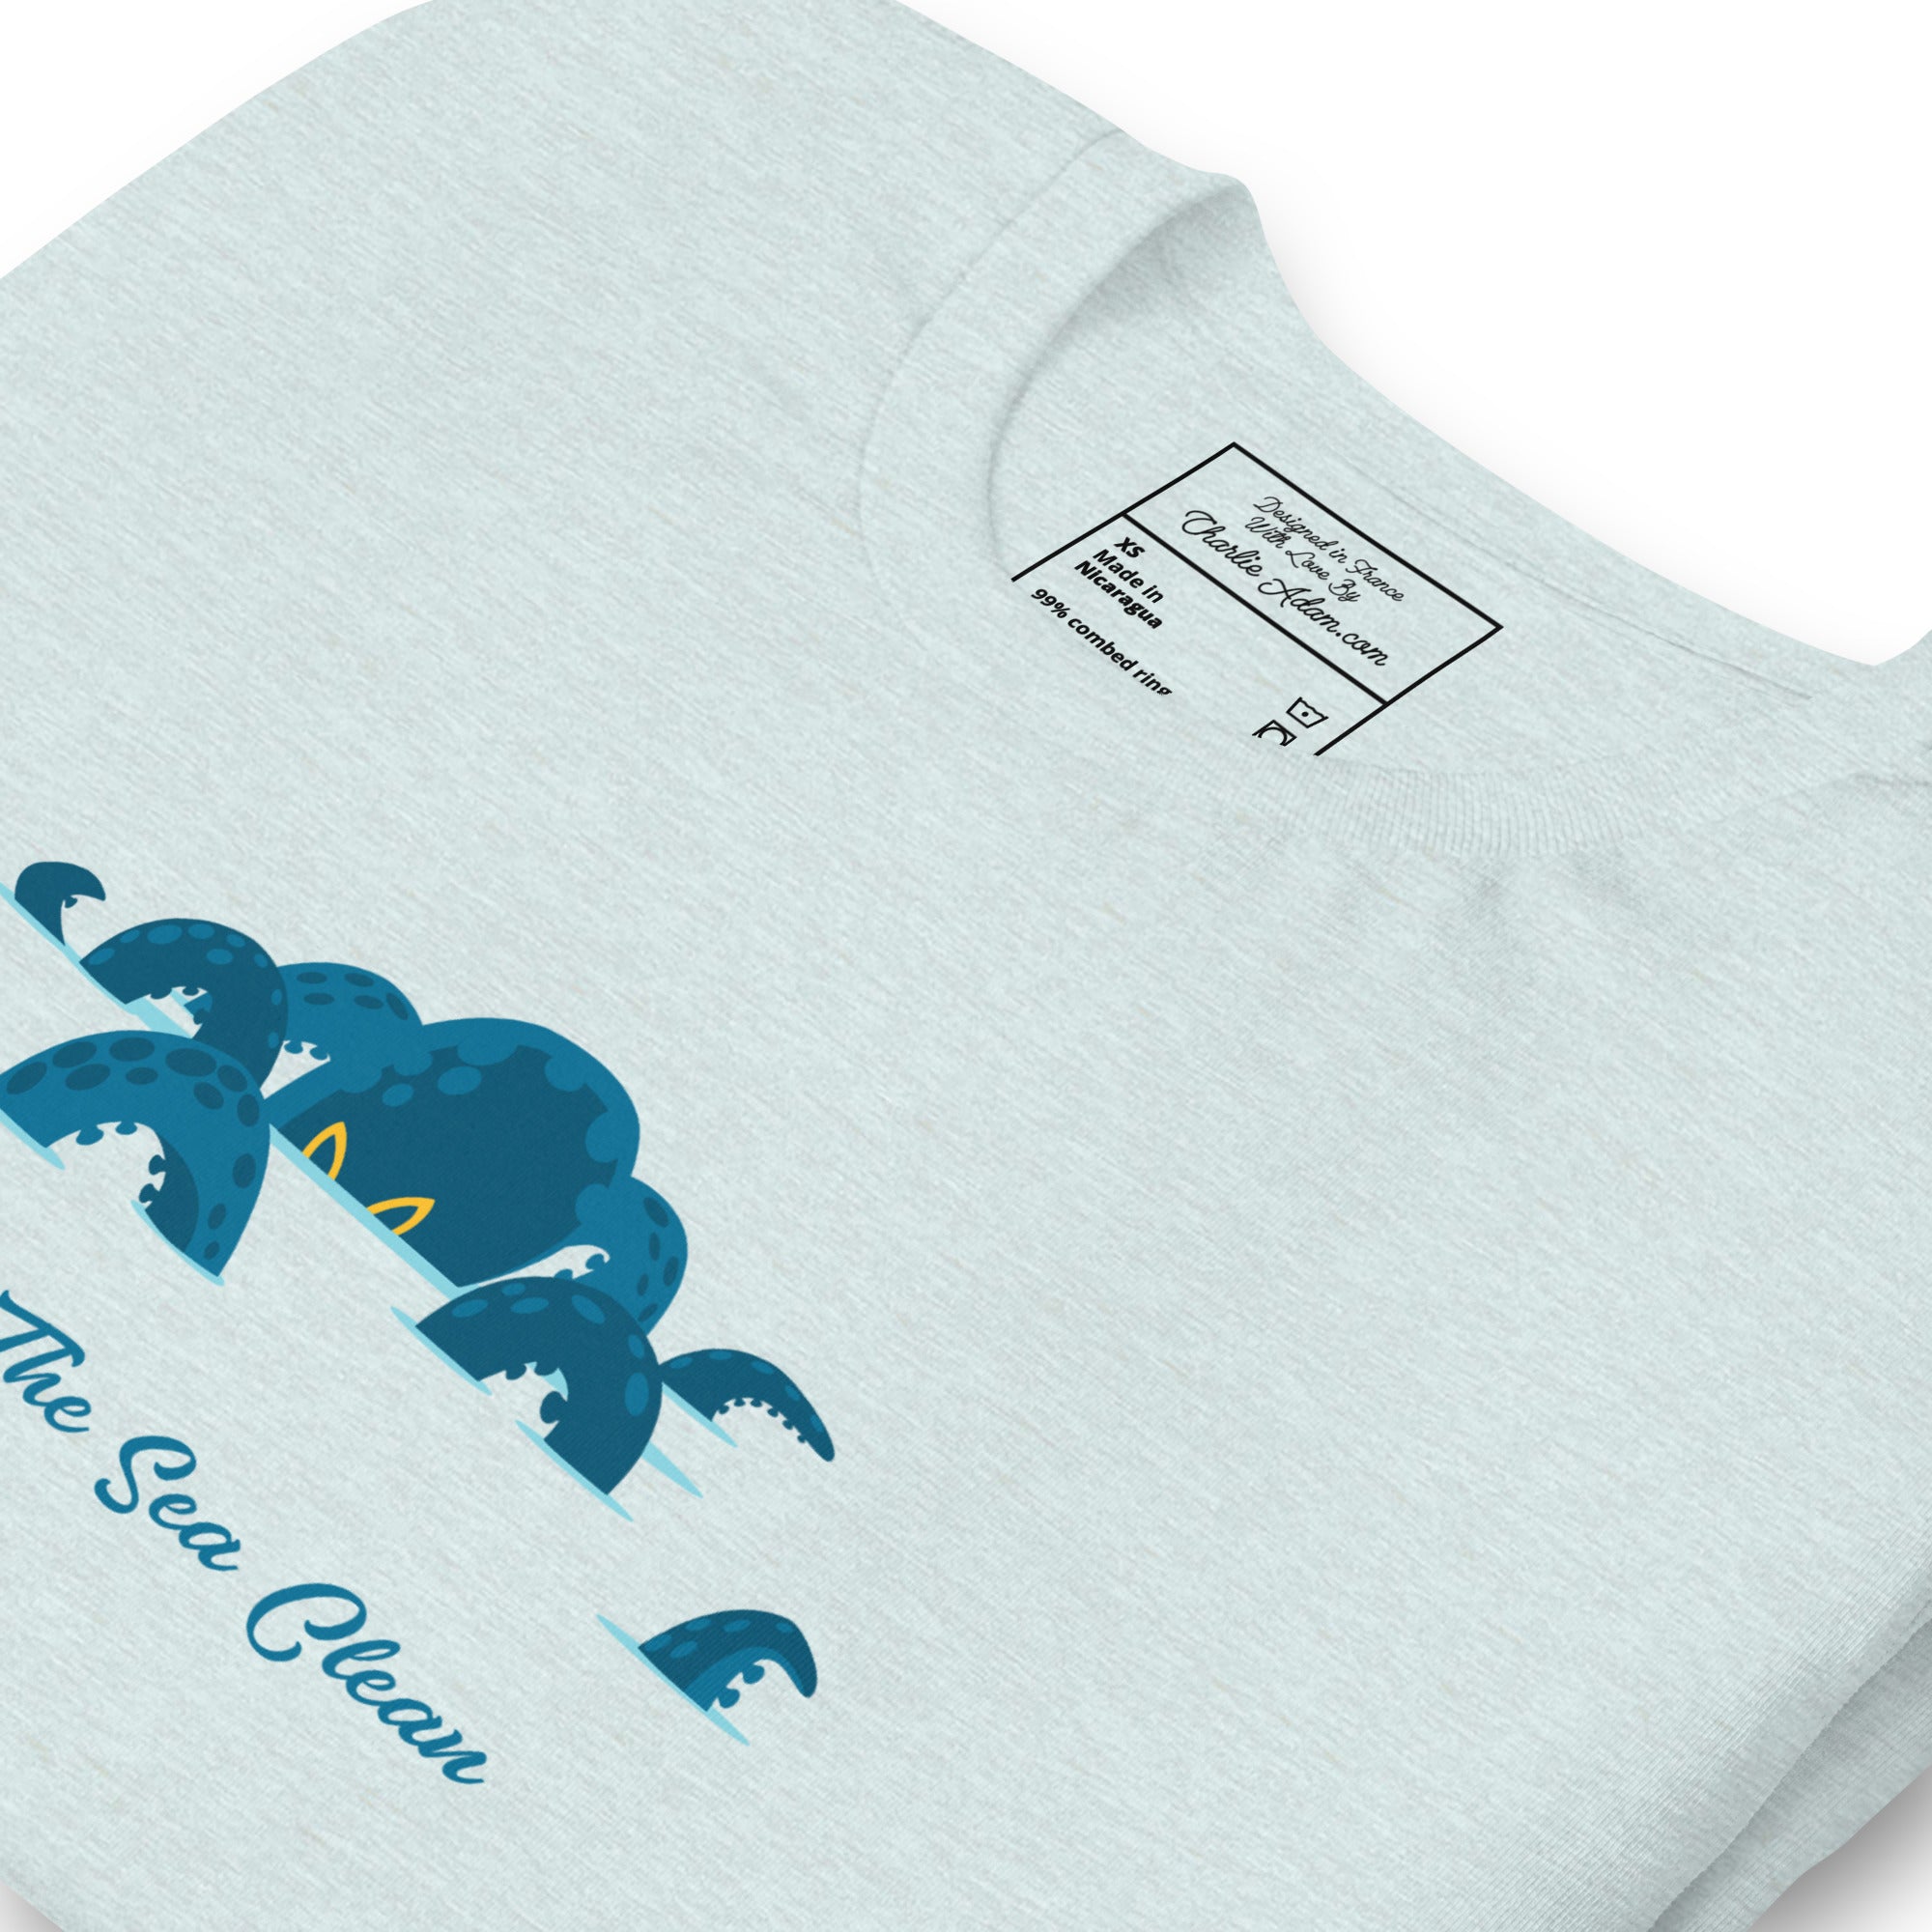 T-shirt en coton unisexe Octopus Blue sur couleurs chinées claires